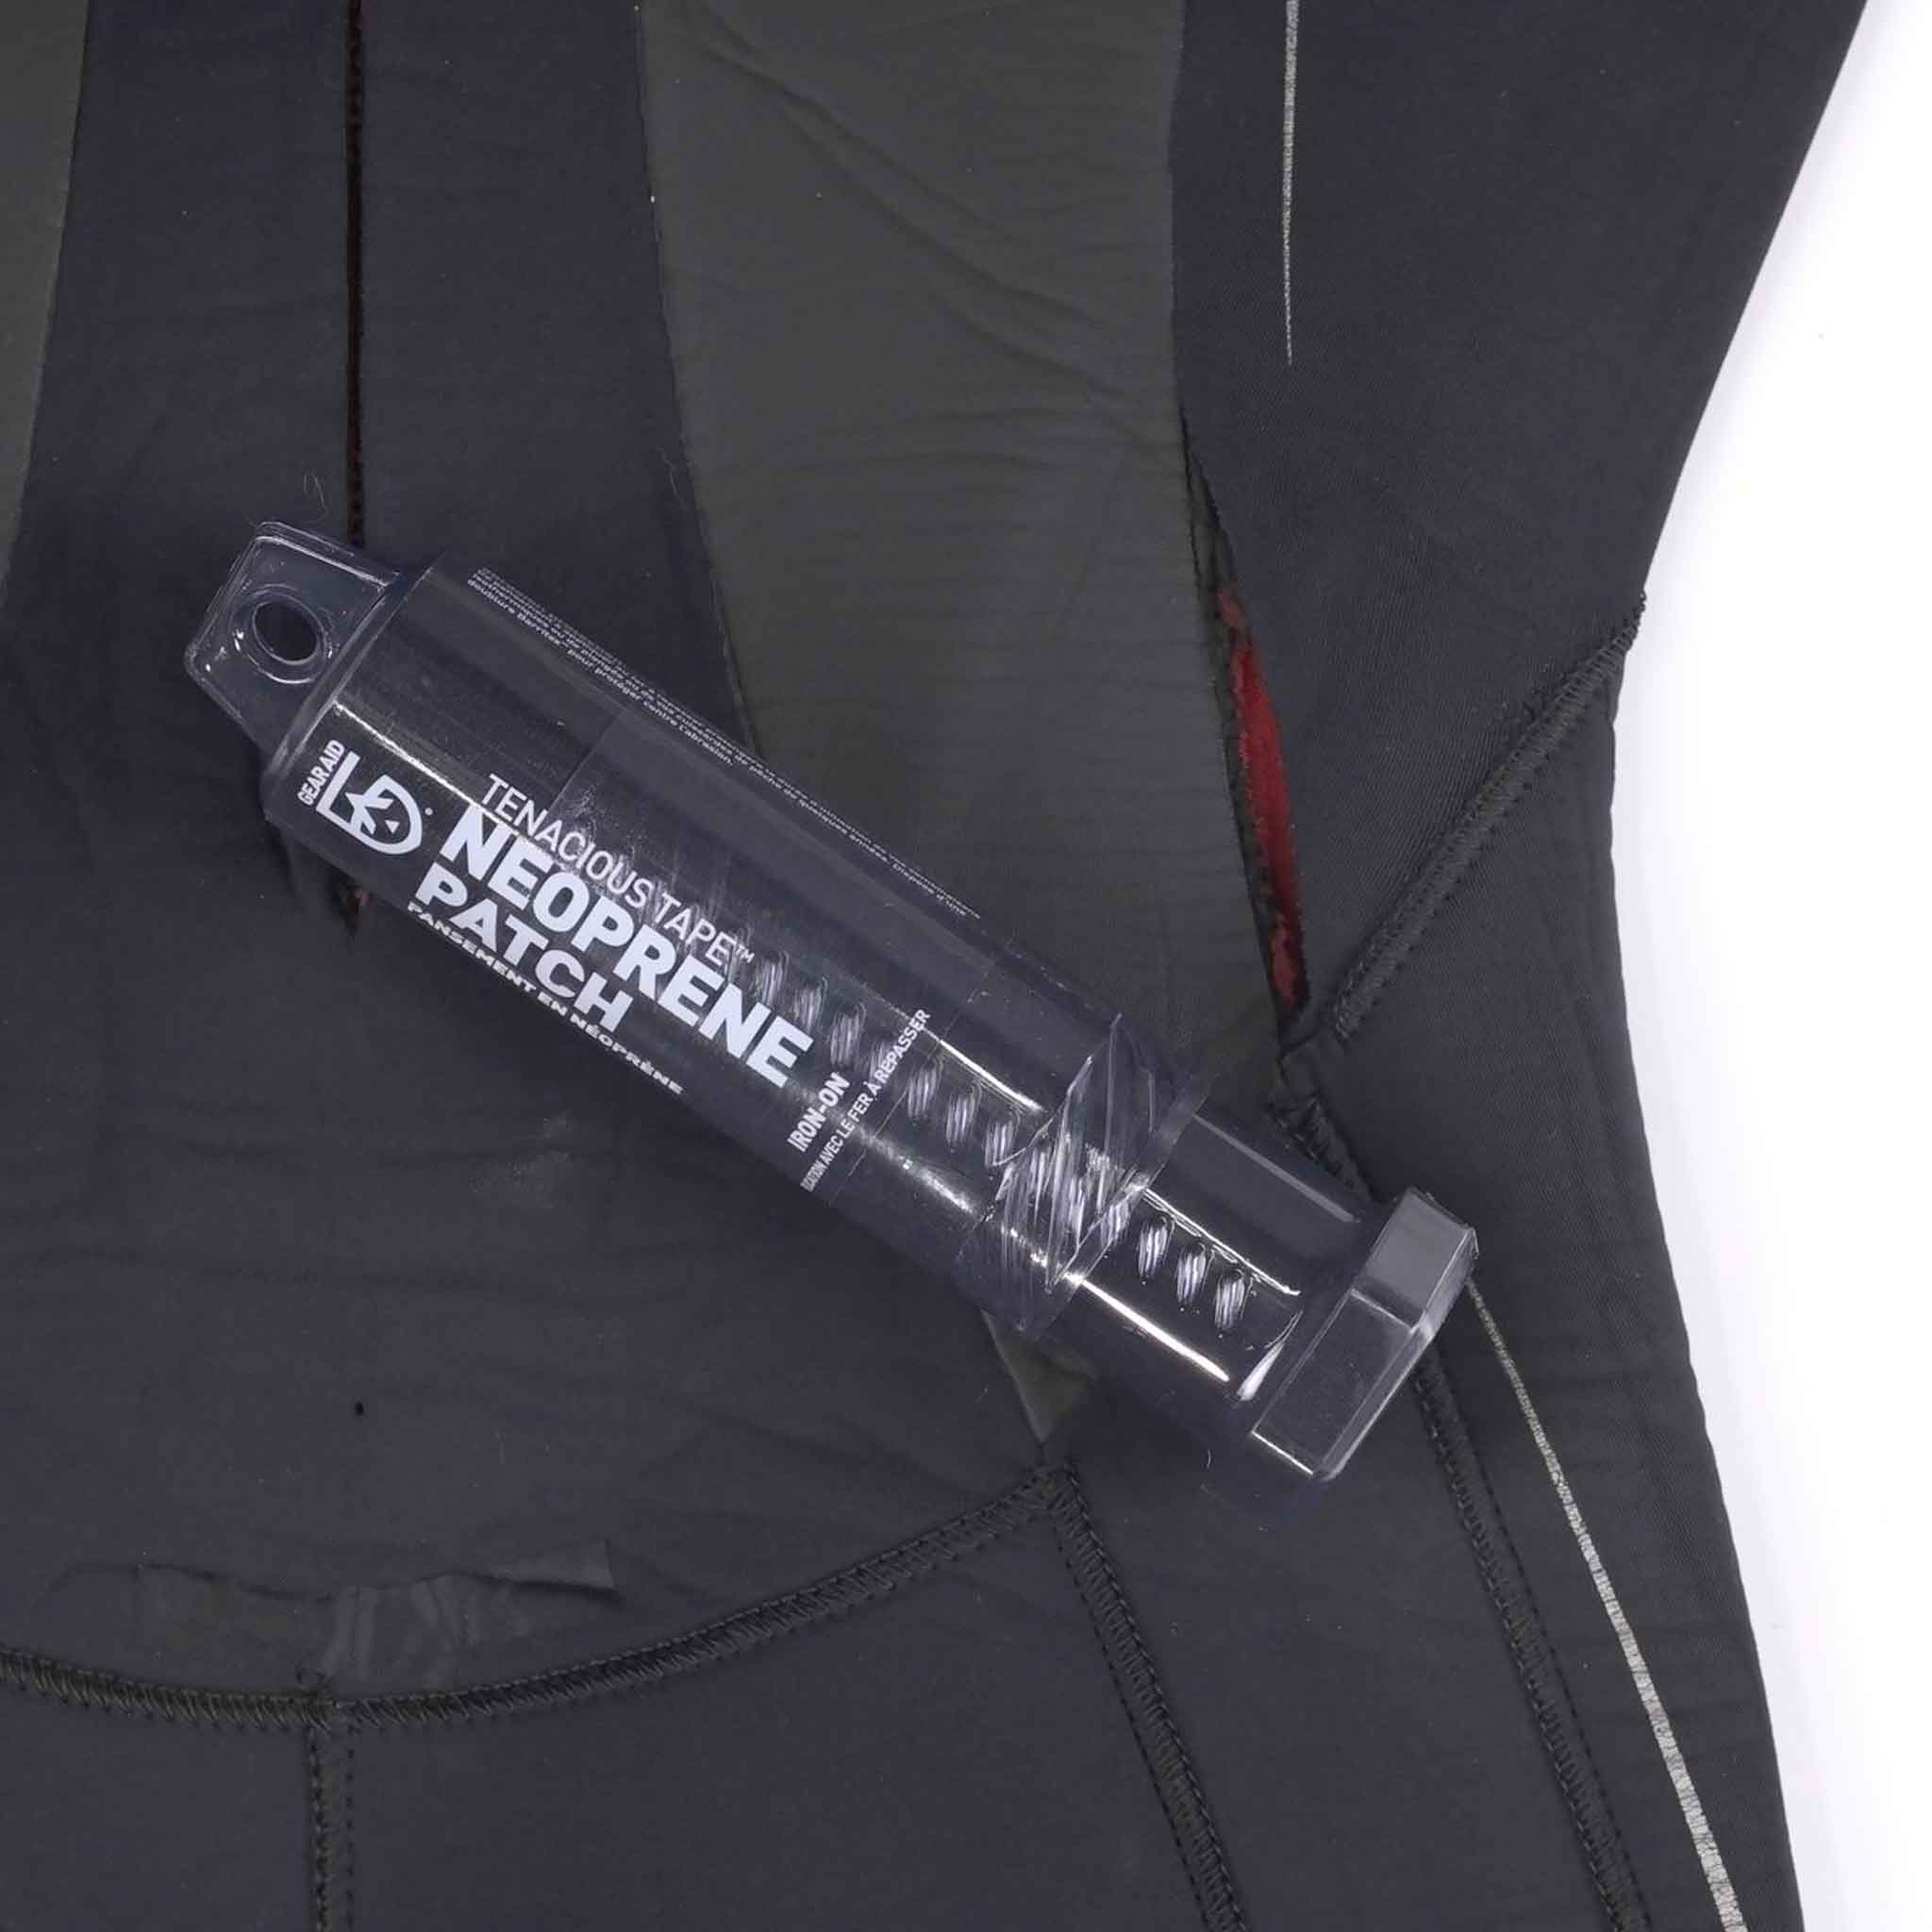 Gear Aid Zipper Stick Lubricant For Sale Online - Dan's Dive Shop